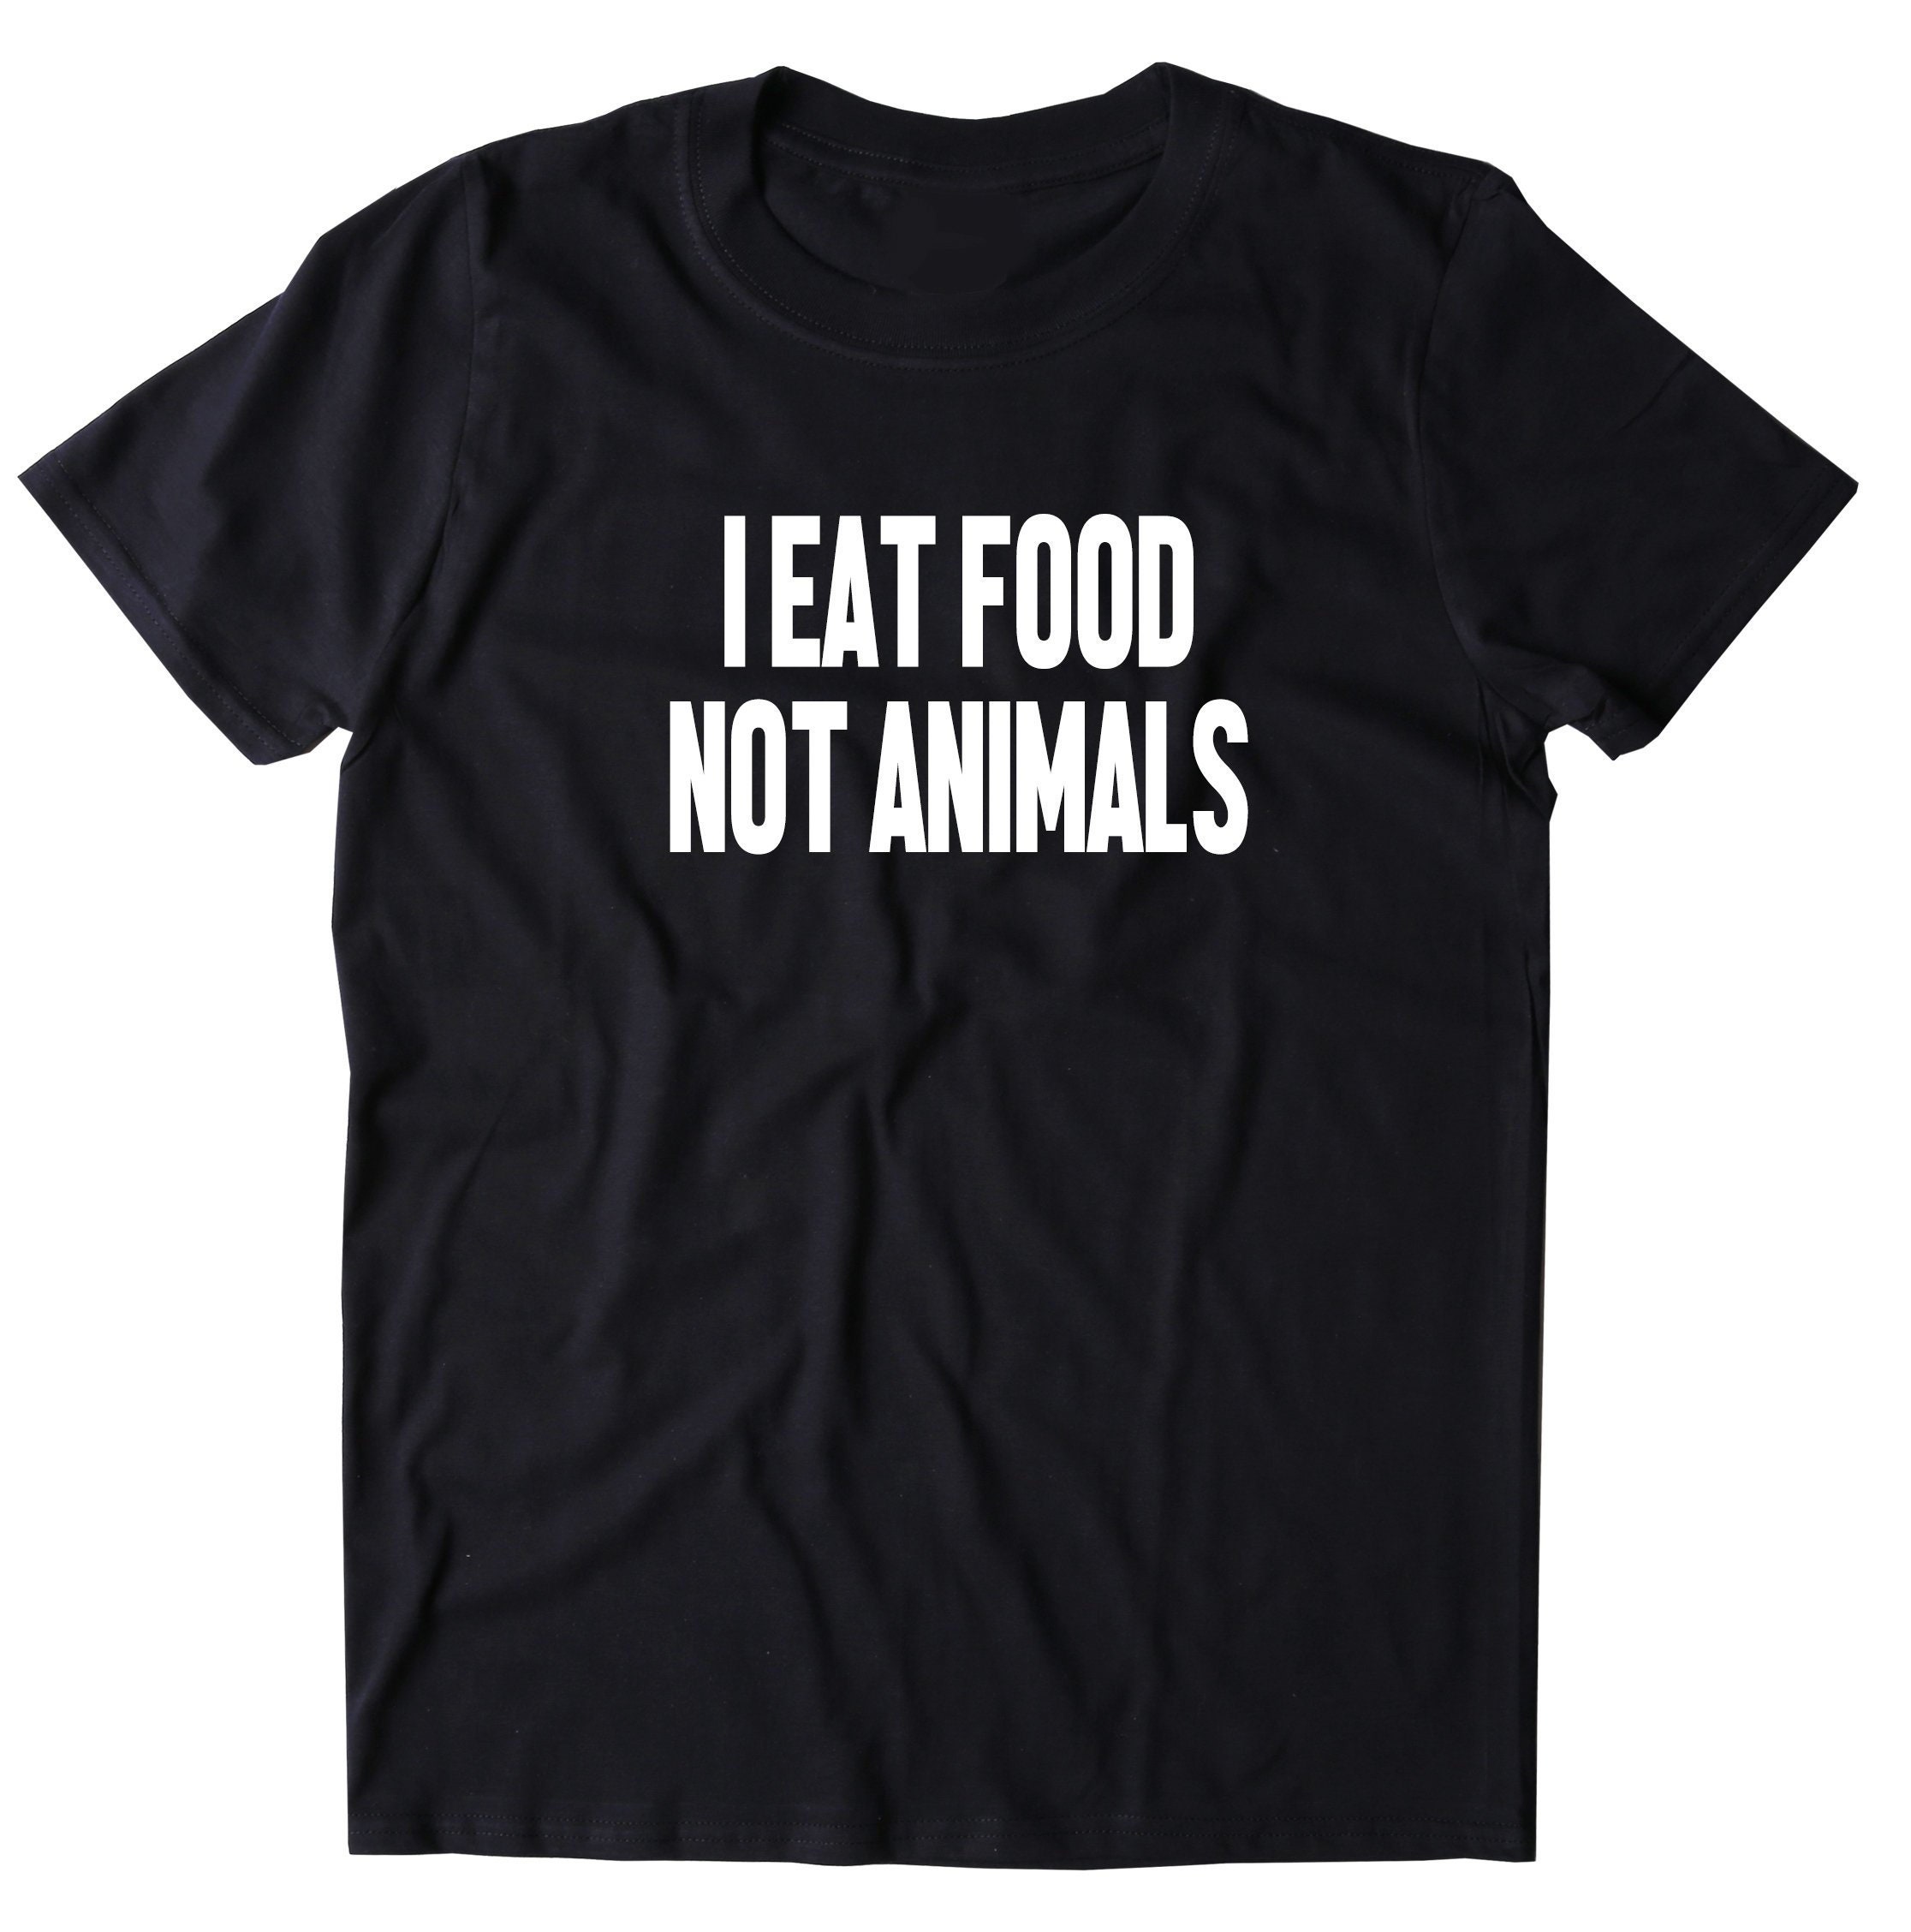 I Eat Food Not Animals Shirt Vegan Vegetarian Statement - Etsy